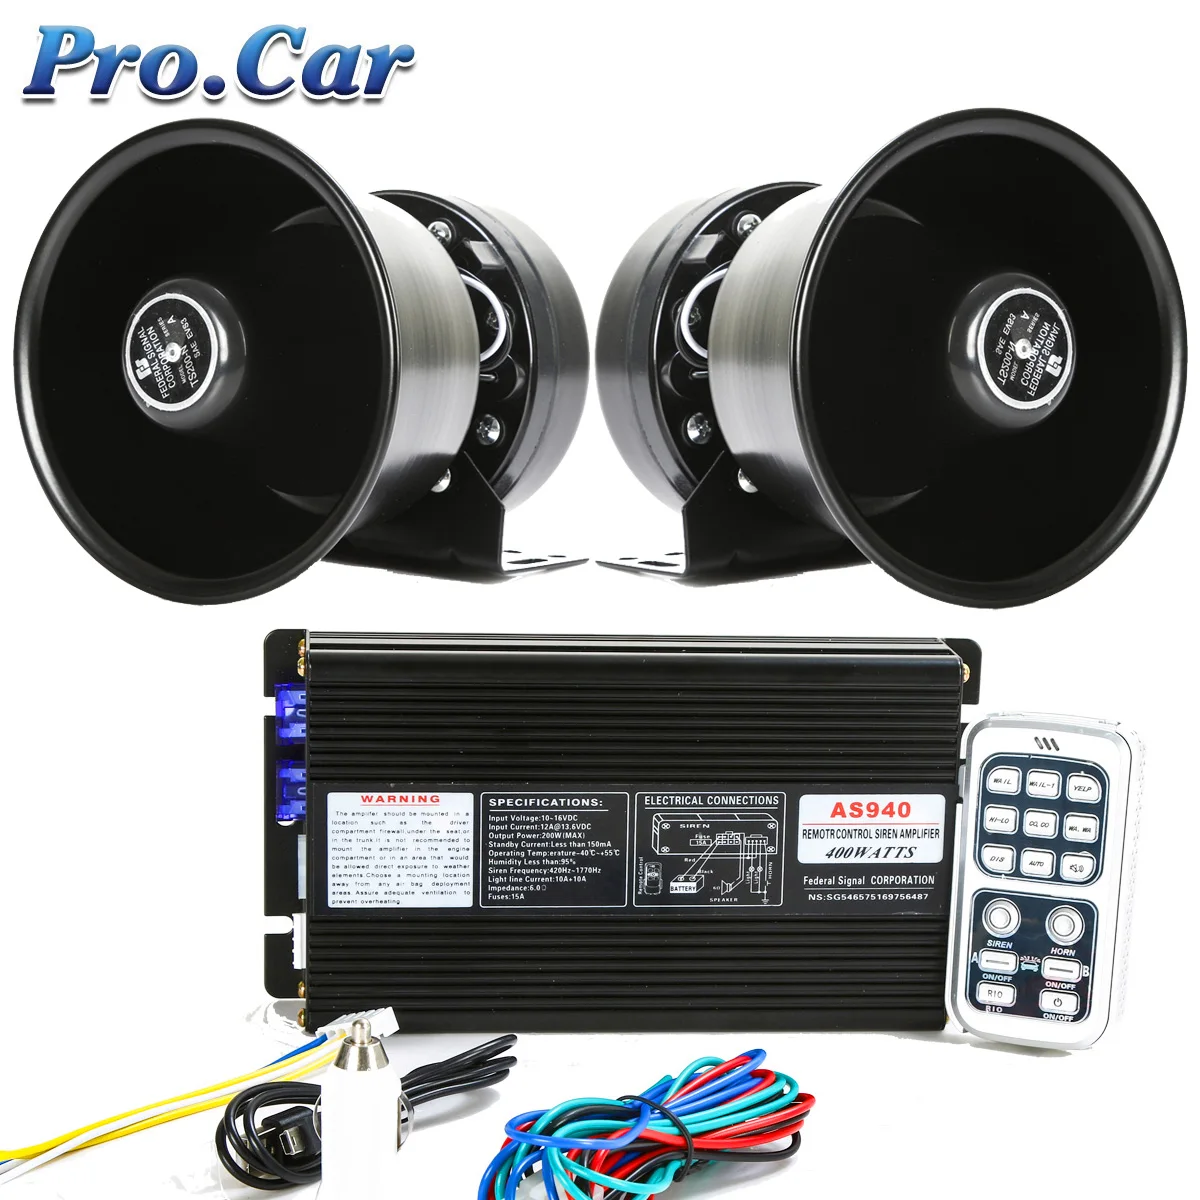 

400W Police Siren Car MIC Speaker System 12 Sound Loud for 12V-24V Car Truck Warning Alarm amplifier Siren Auto Horn